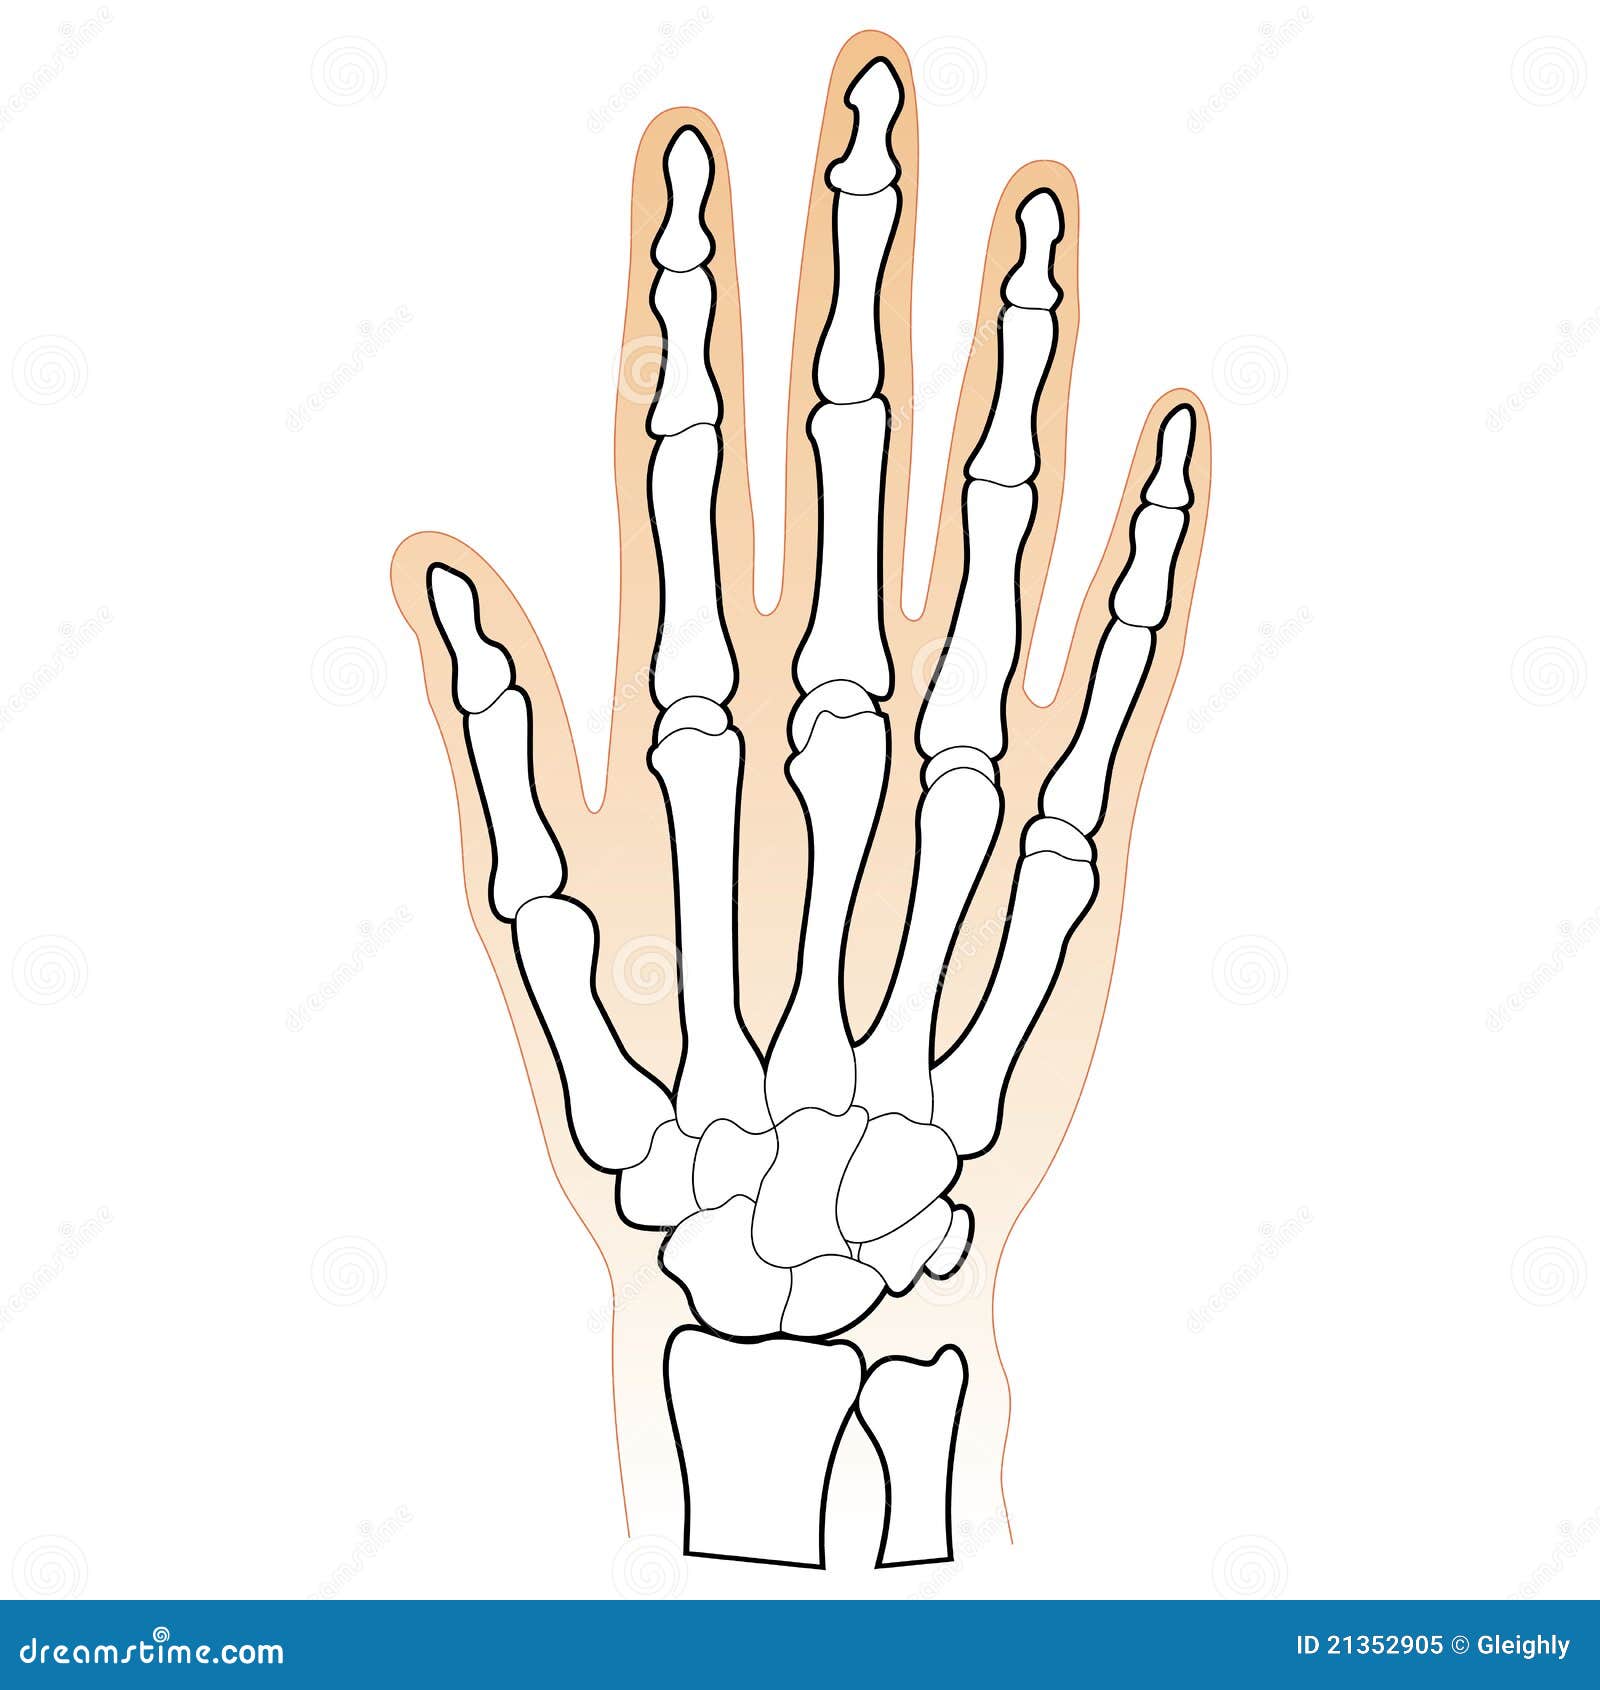 bones of the human hand